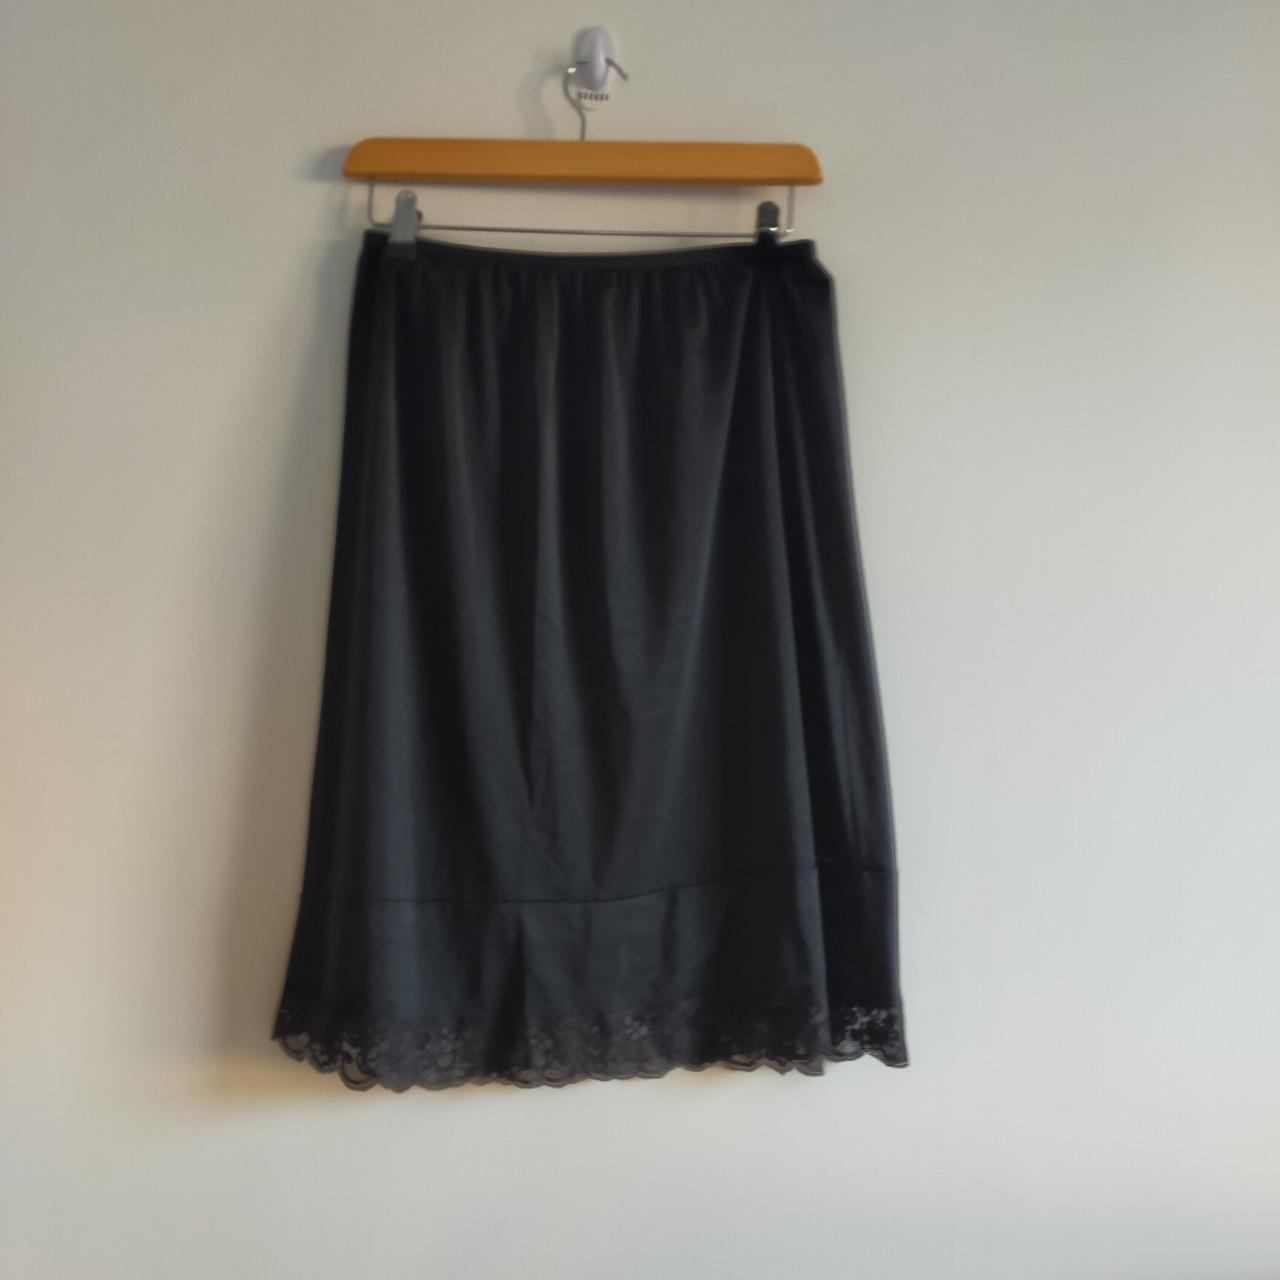 Vintage black slip skirt from old label Marks and... - Depop